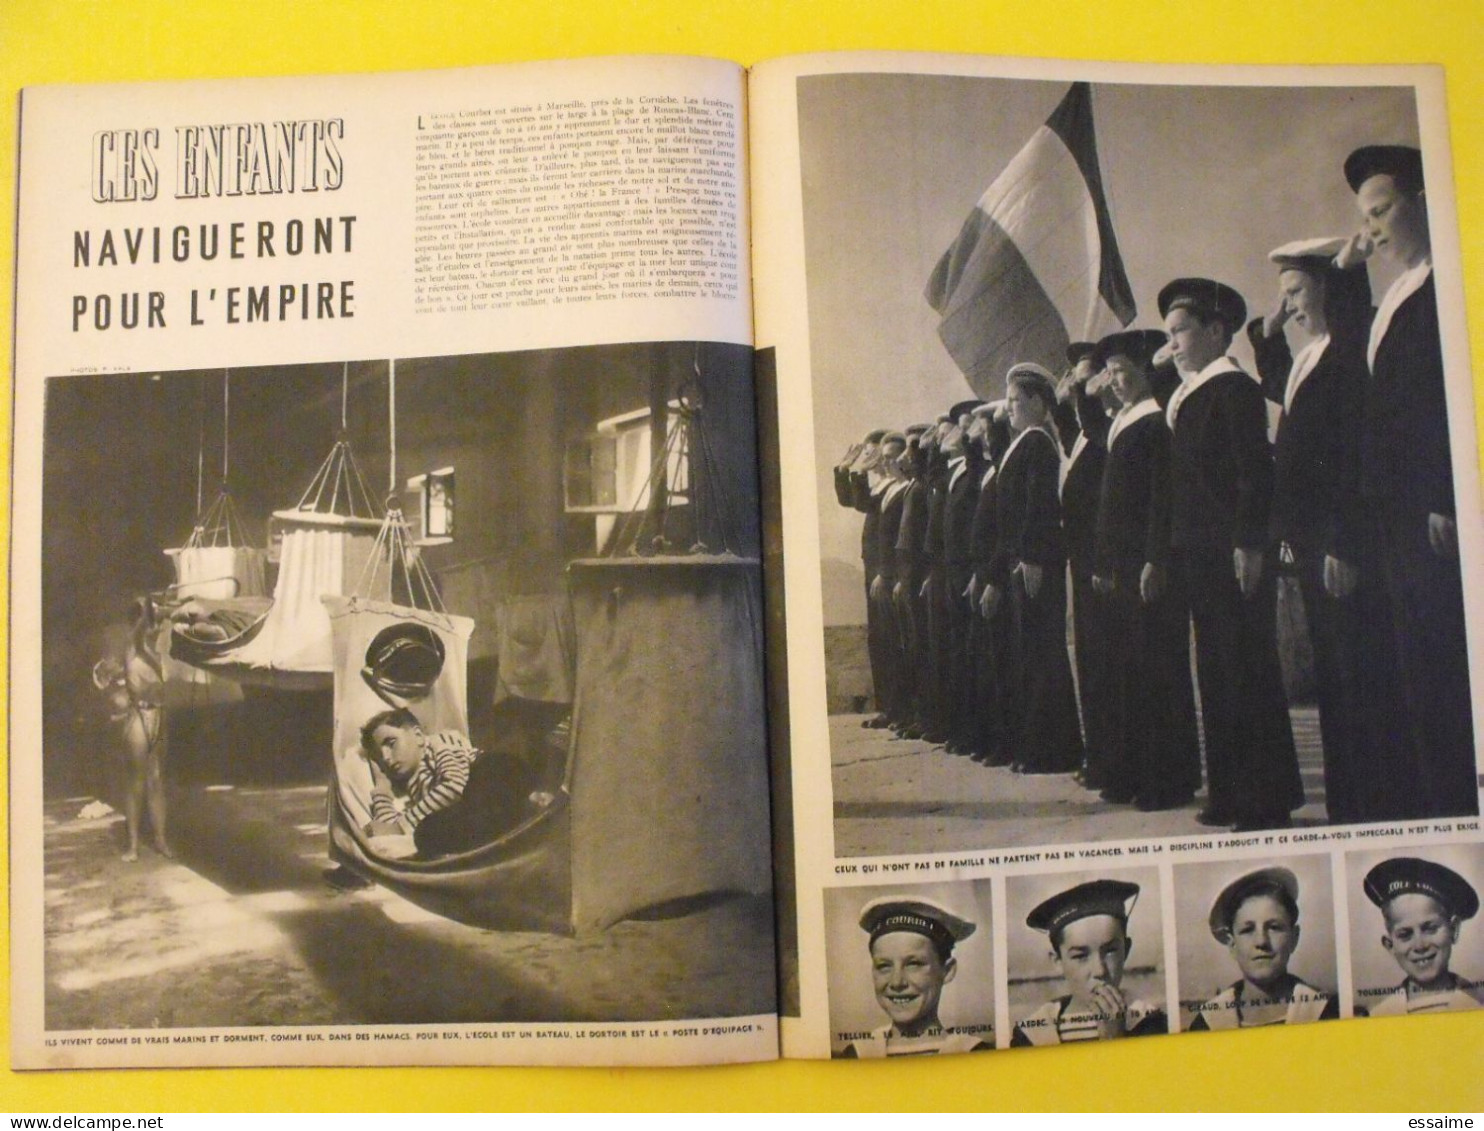 6 revues La semaine de 1941. actualités guerre. photos collaboration iran pagnol laval turquie tatoué giono ukraine